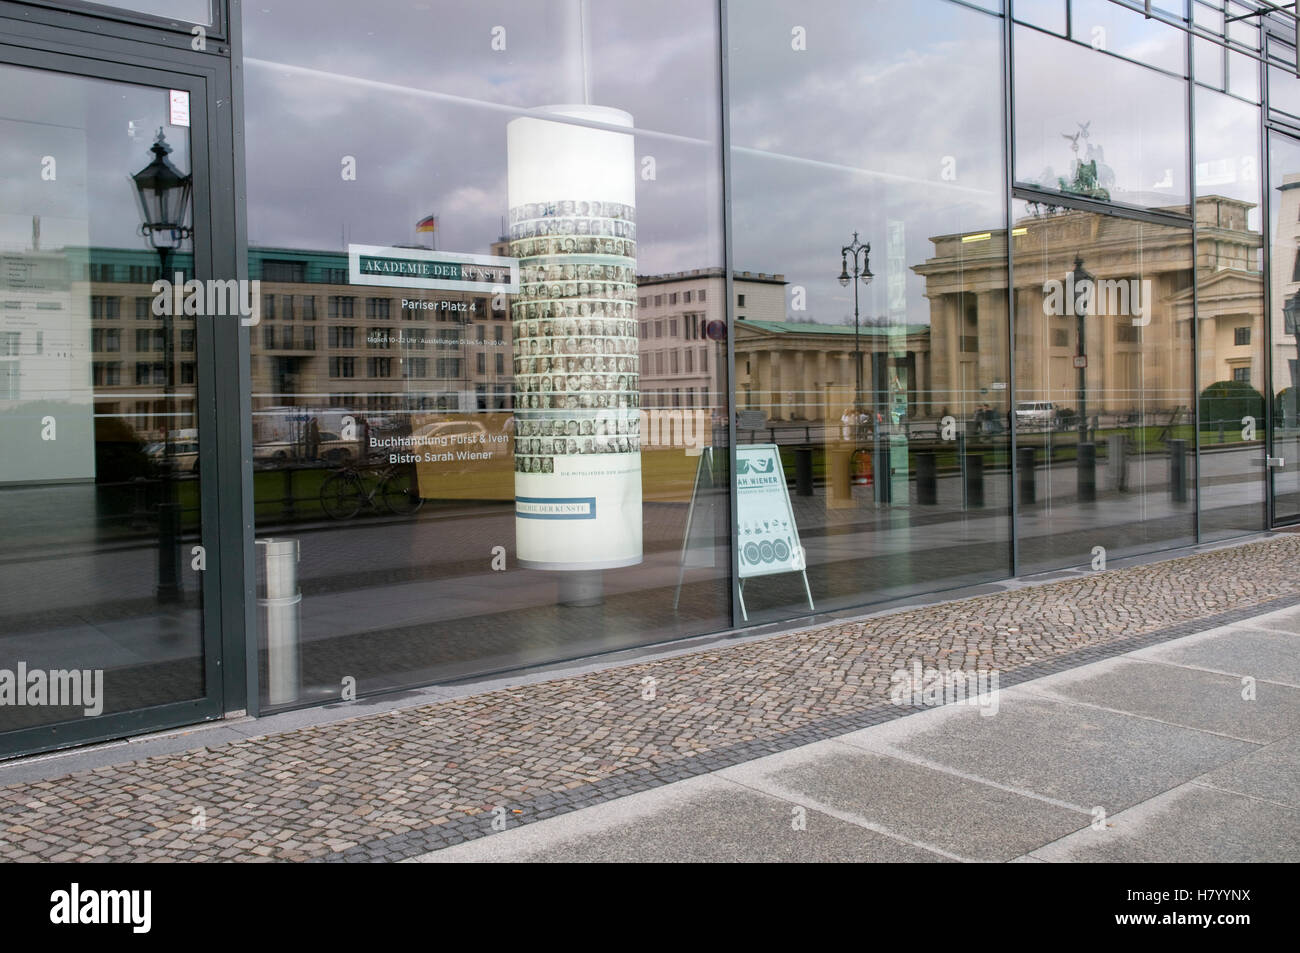 Reflection at the Akademie der Kuenste Academy of Arts, Pariser Platz square, Berlin Stock Photo